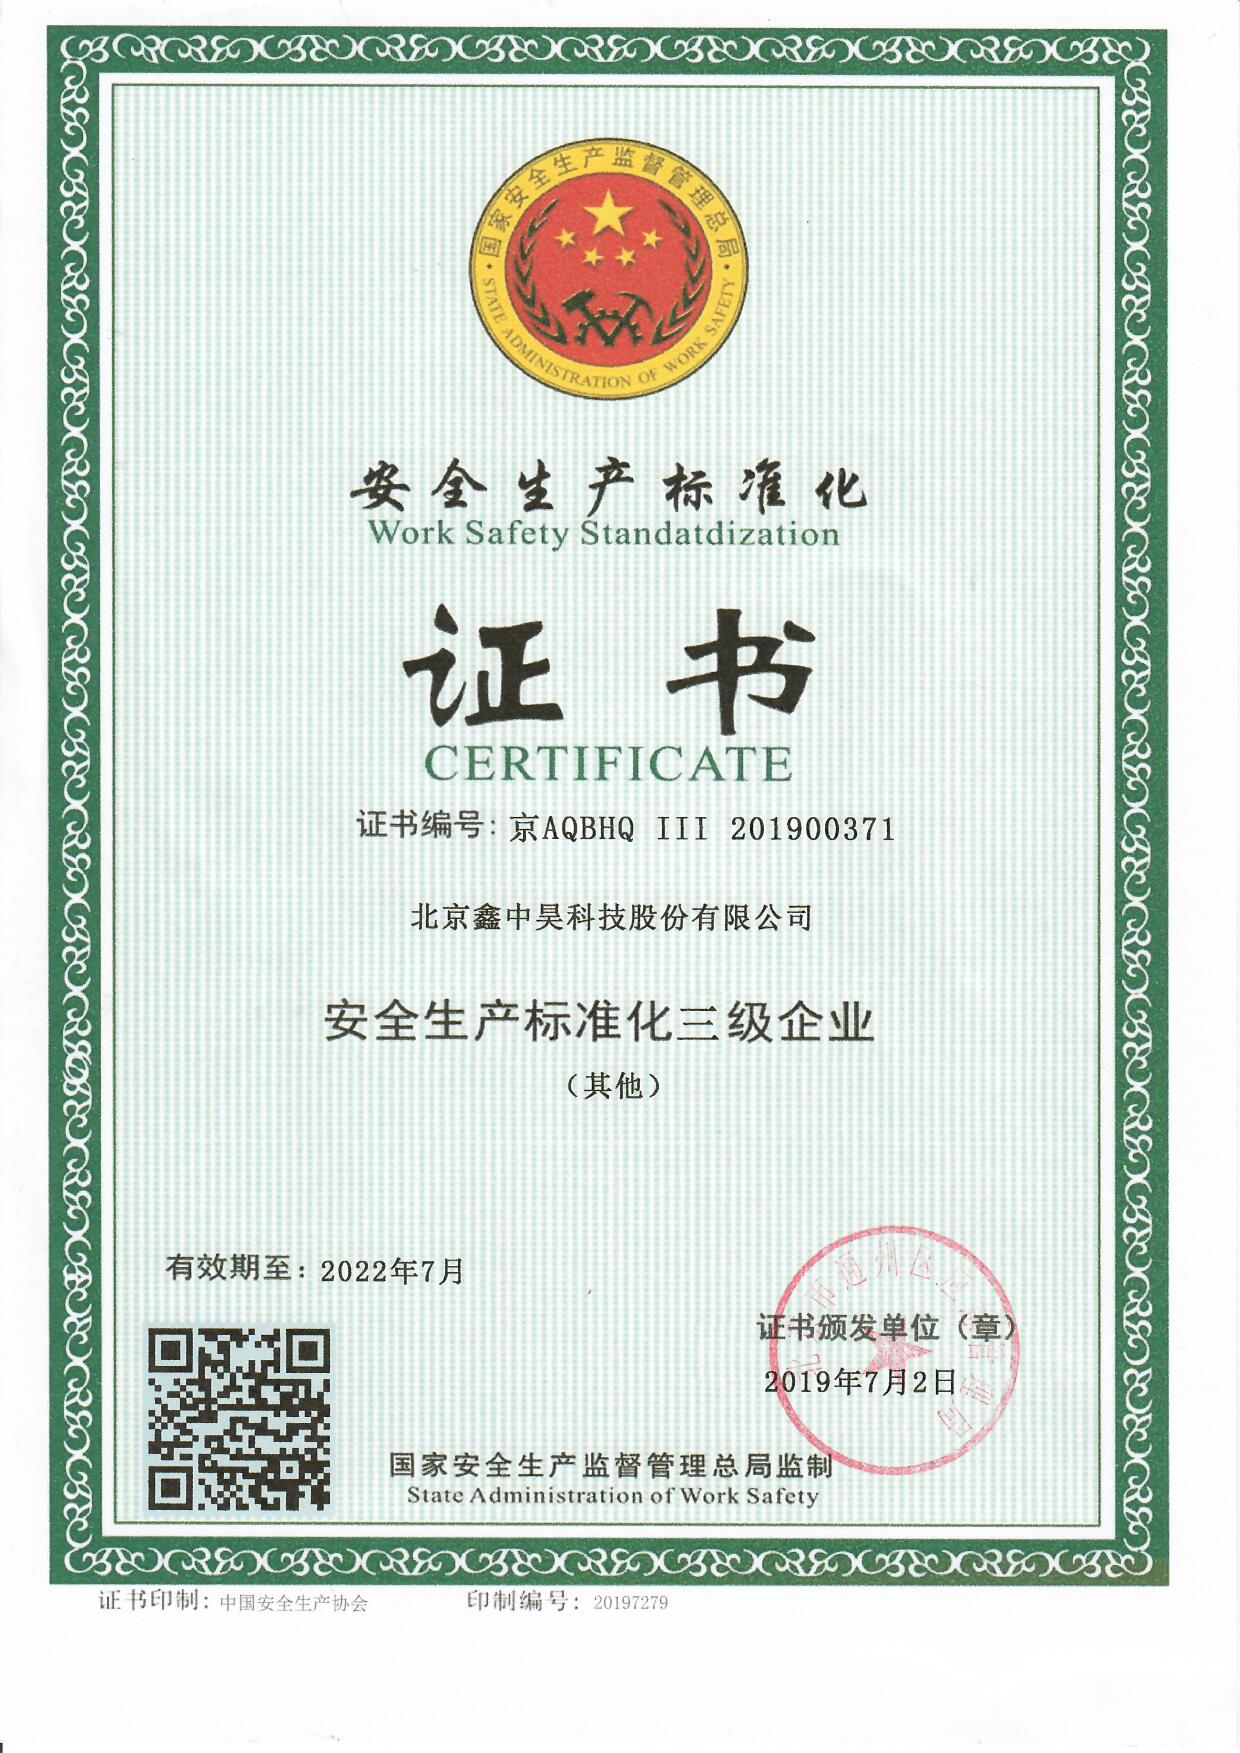 安全生产标准化三级认证证书